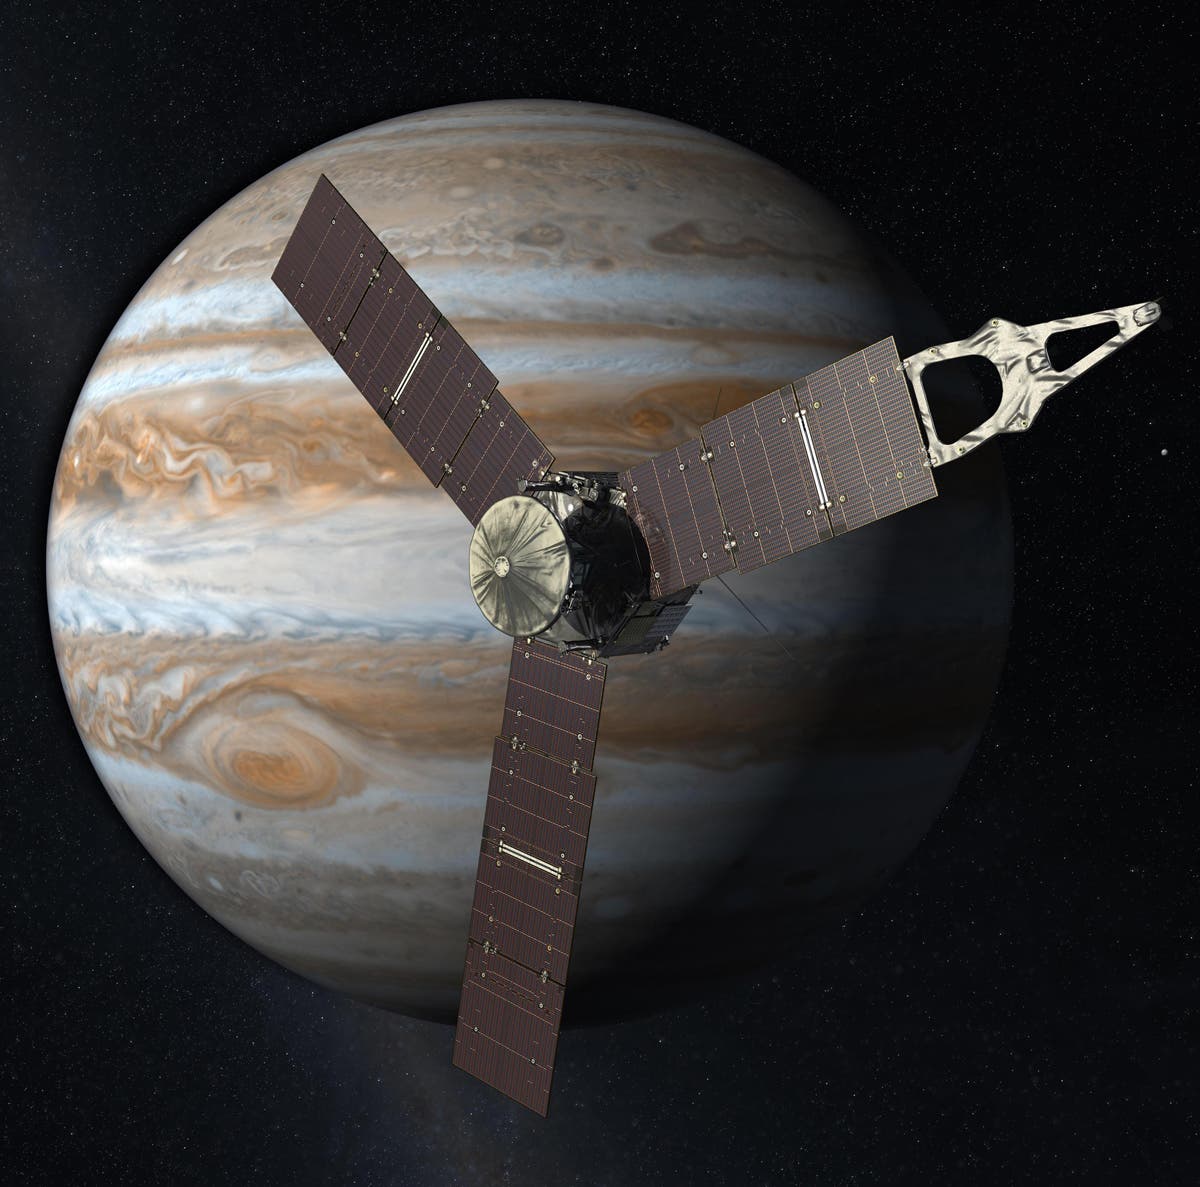 Jupitersonde Juno